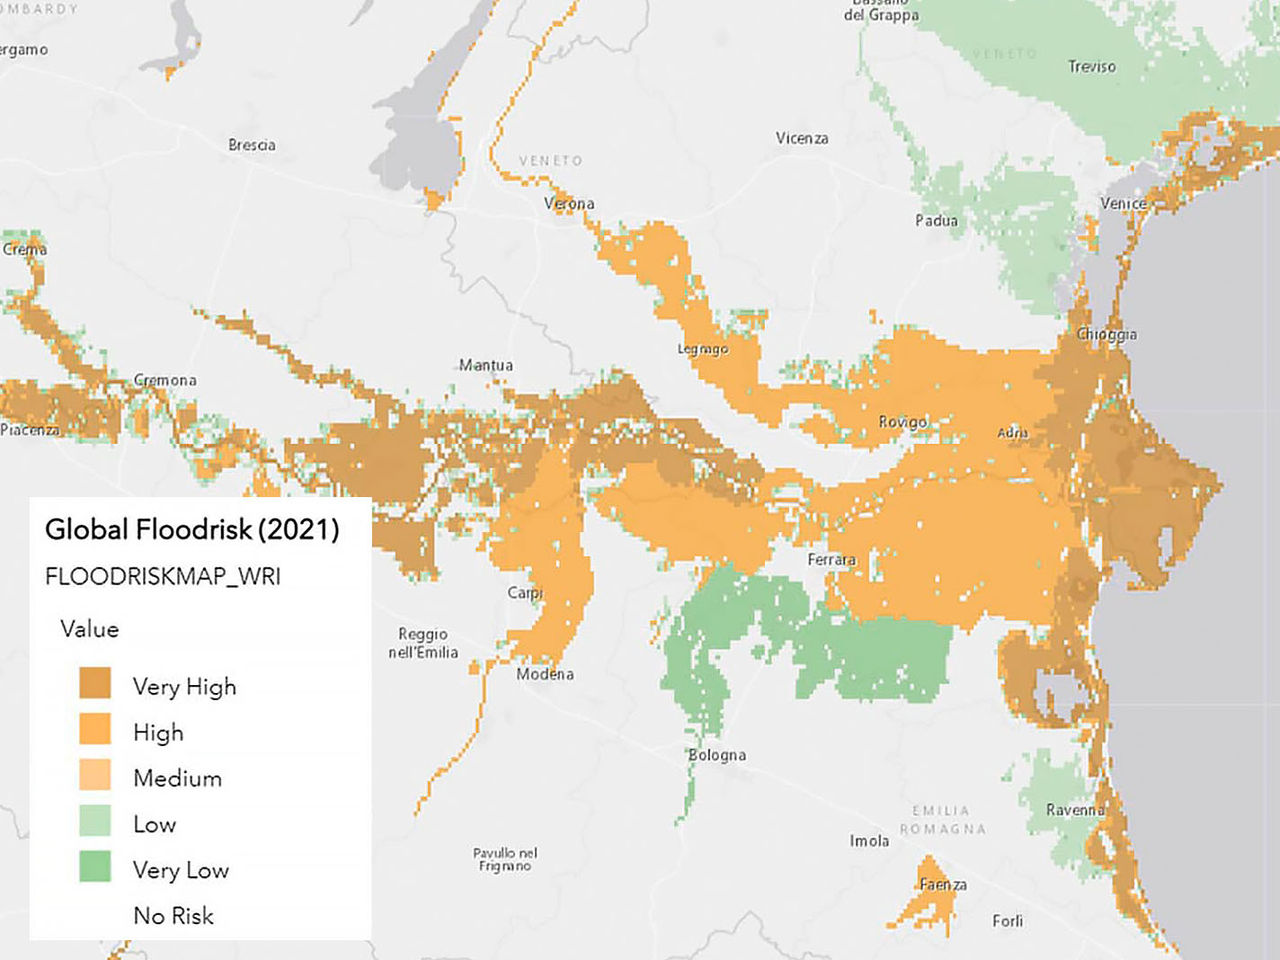 気候リスク評価の一部である、色分けされた洪水リスクのマップ